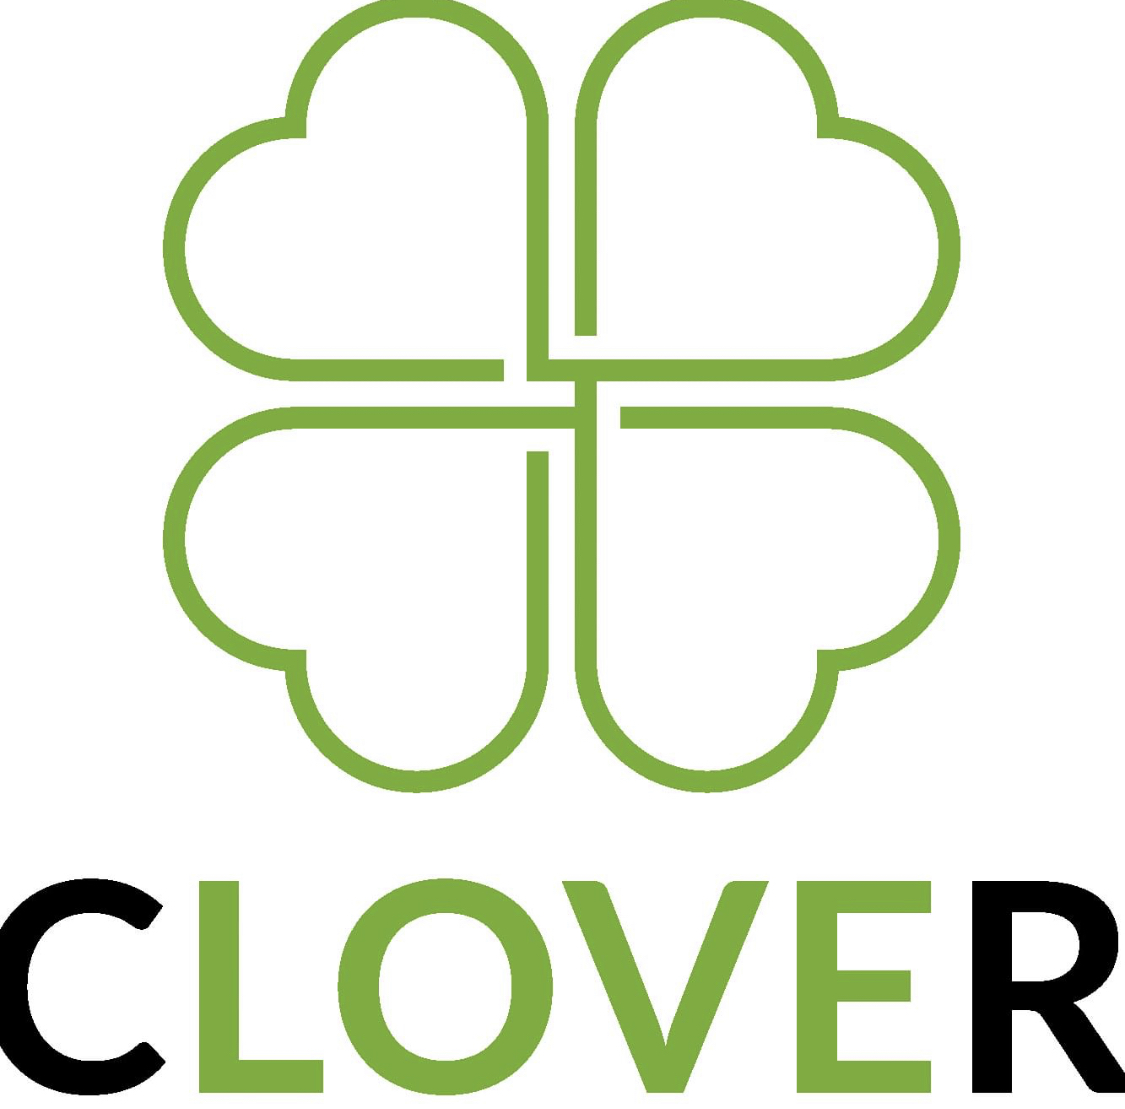 クローバー薬局のロゴ画像